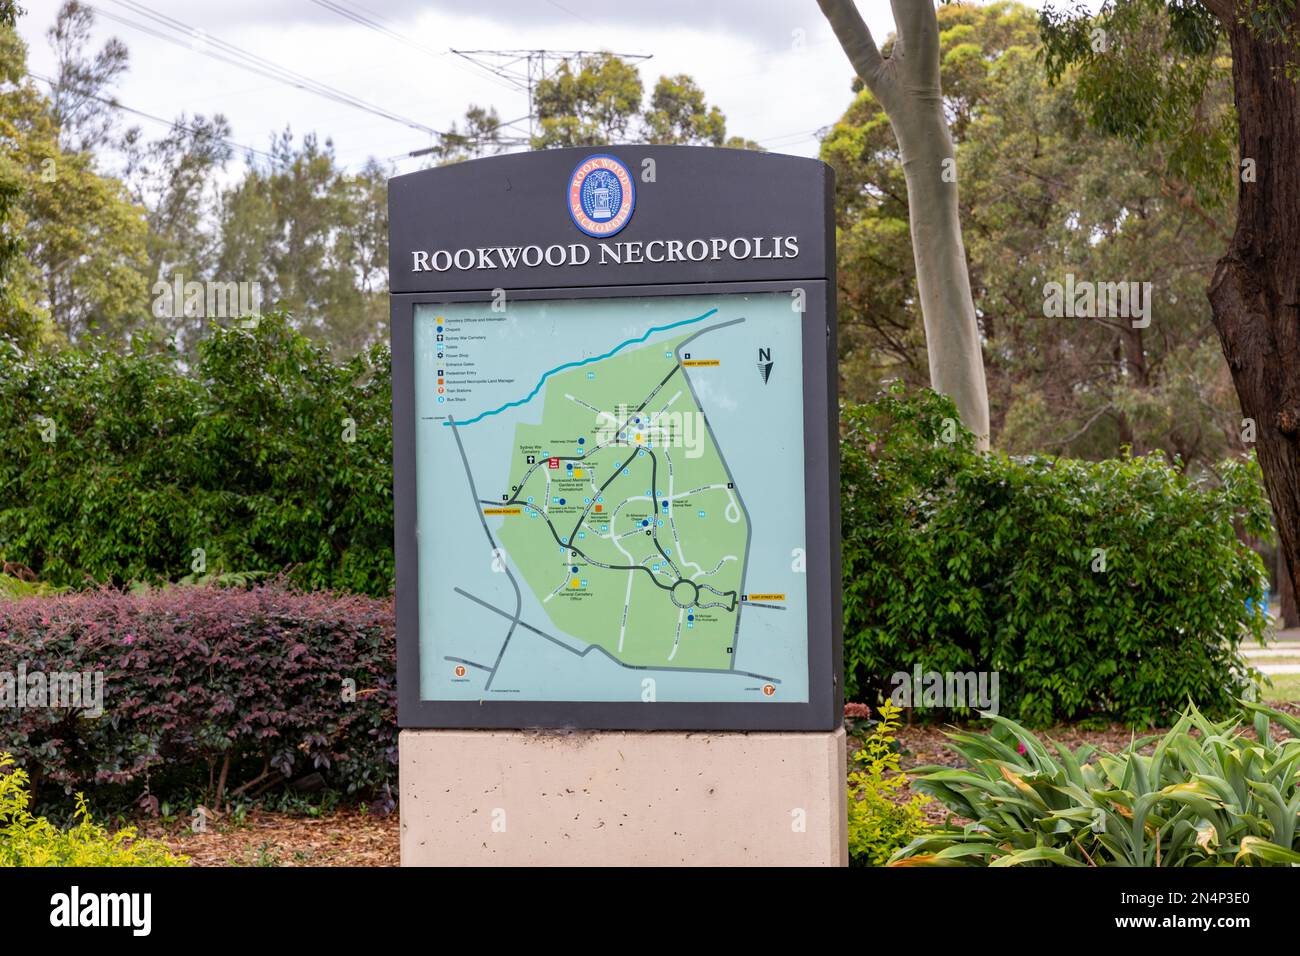 Rookwood necrópolis cementerio en Sydney, mapa y señalización del cementerio, Nueva Gales del Sur, Australia Foto de stock